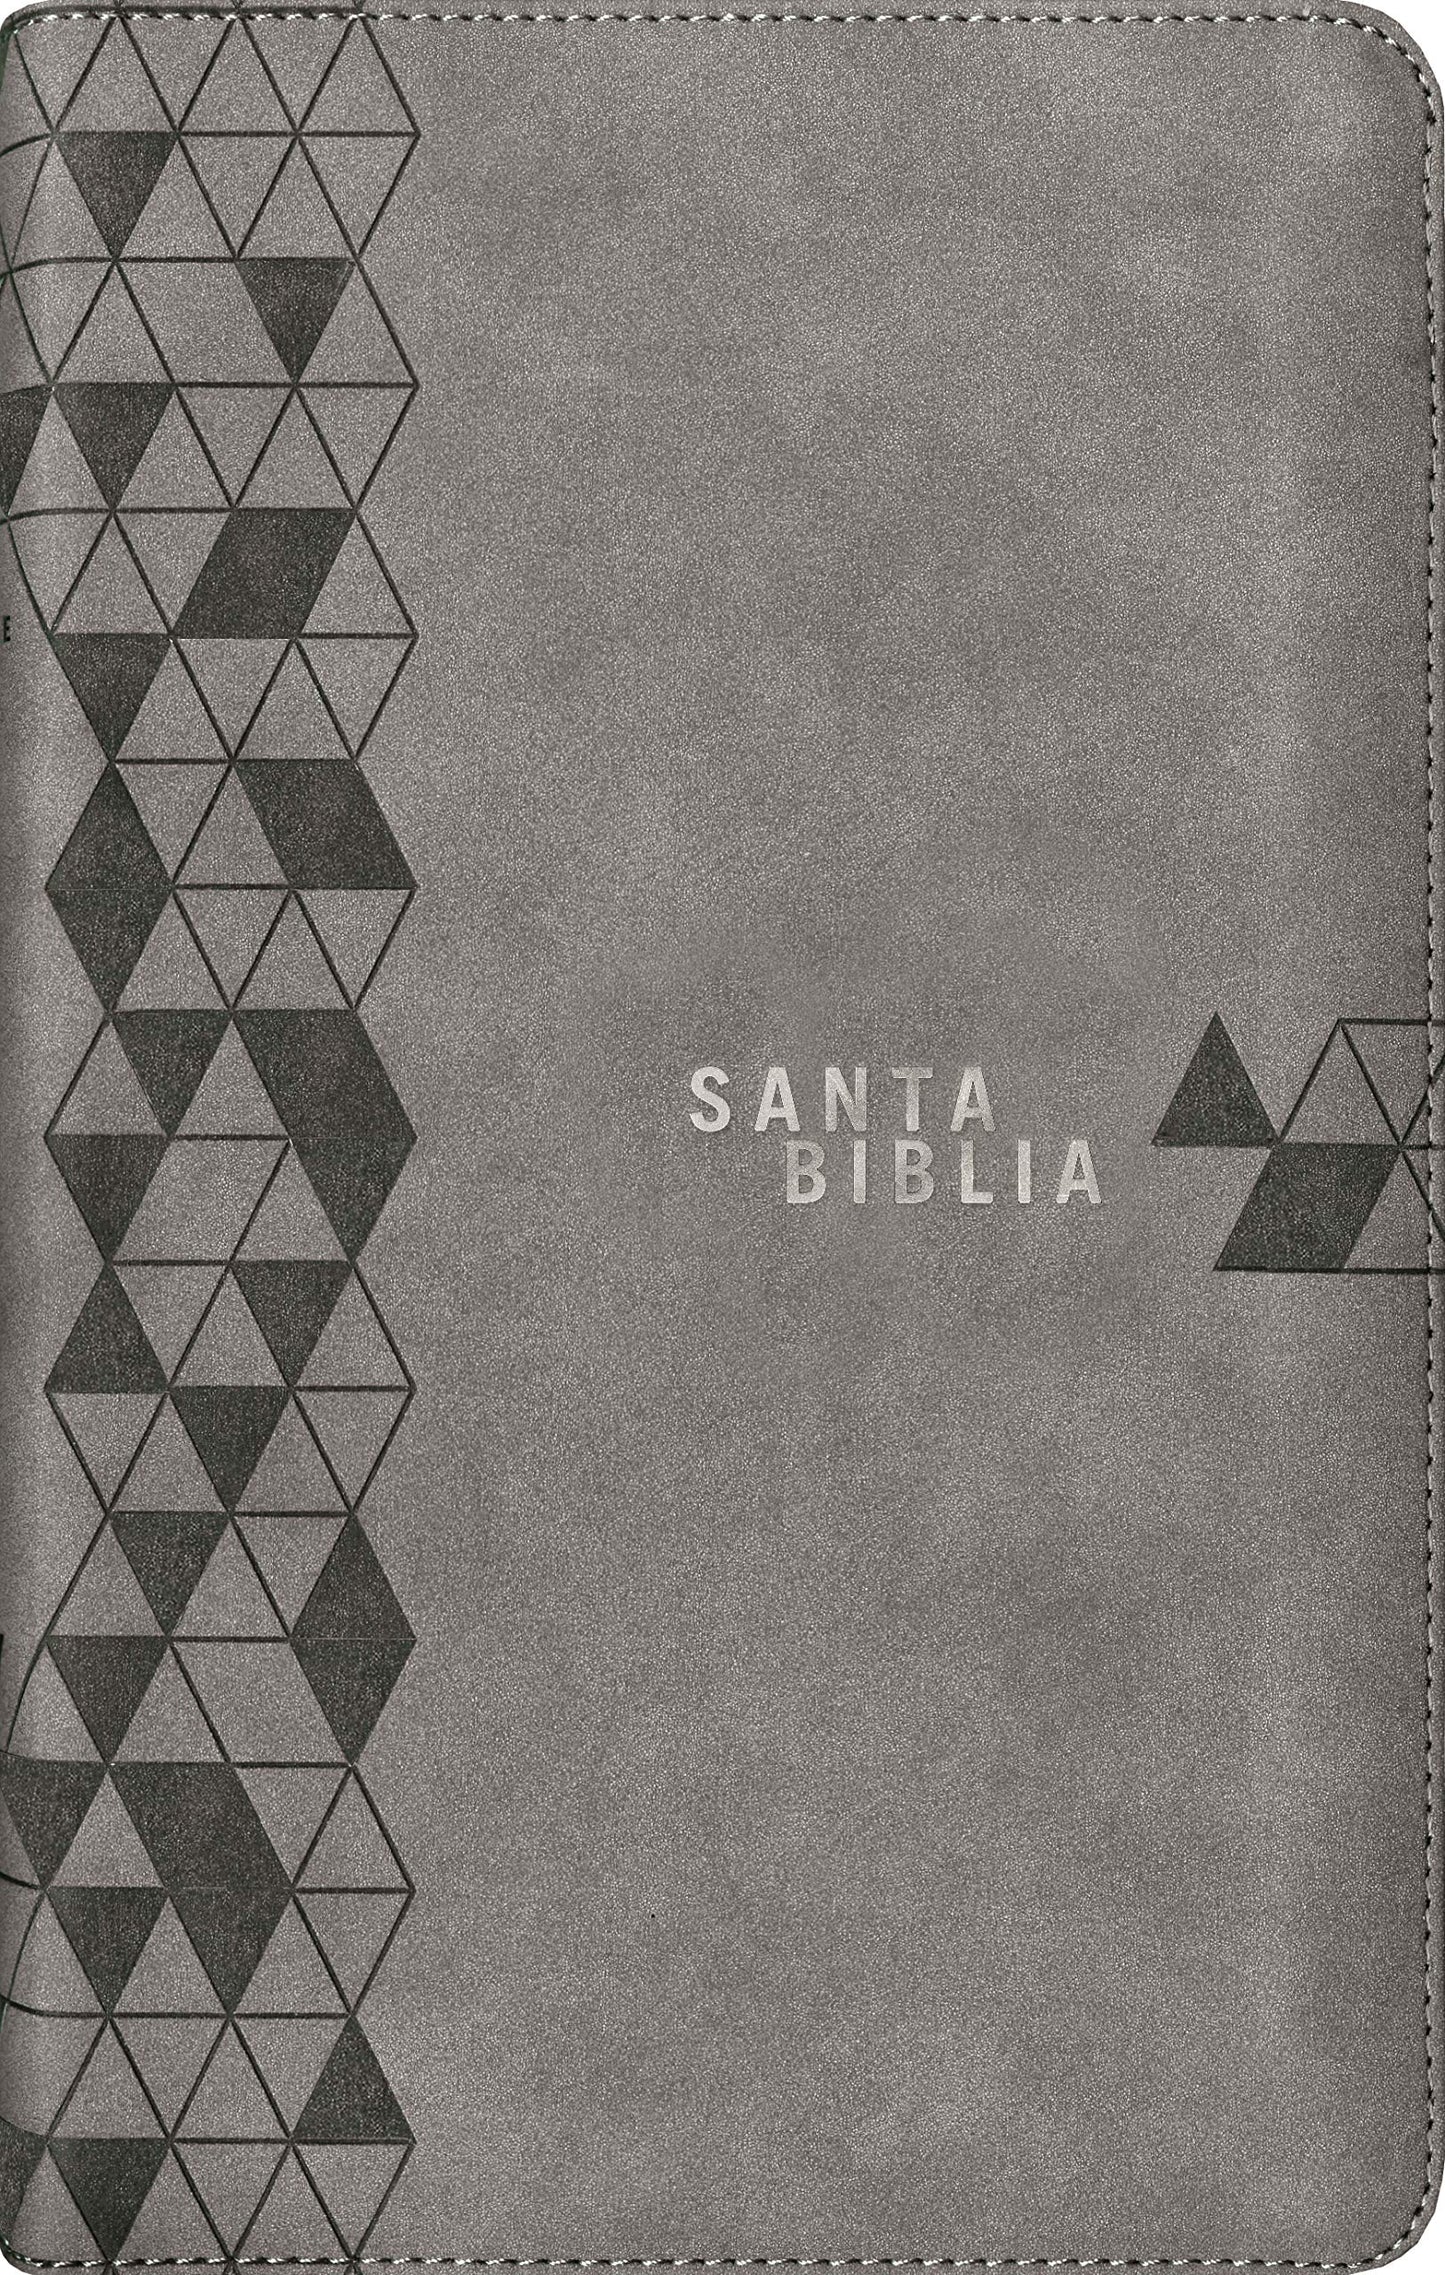 Santa Biblia NTV, Edición cremallera, Gris suave (Spanish Edition)